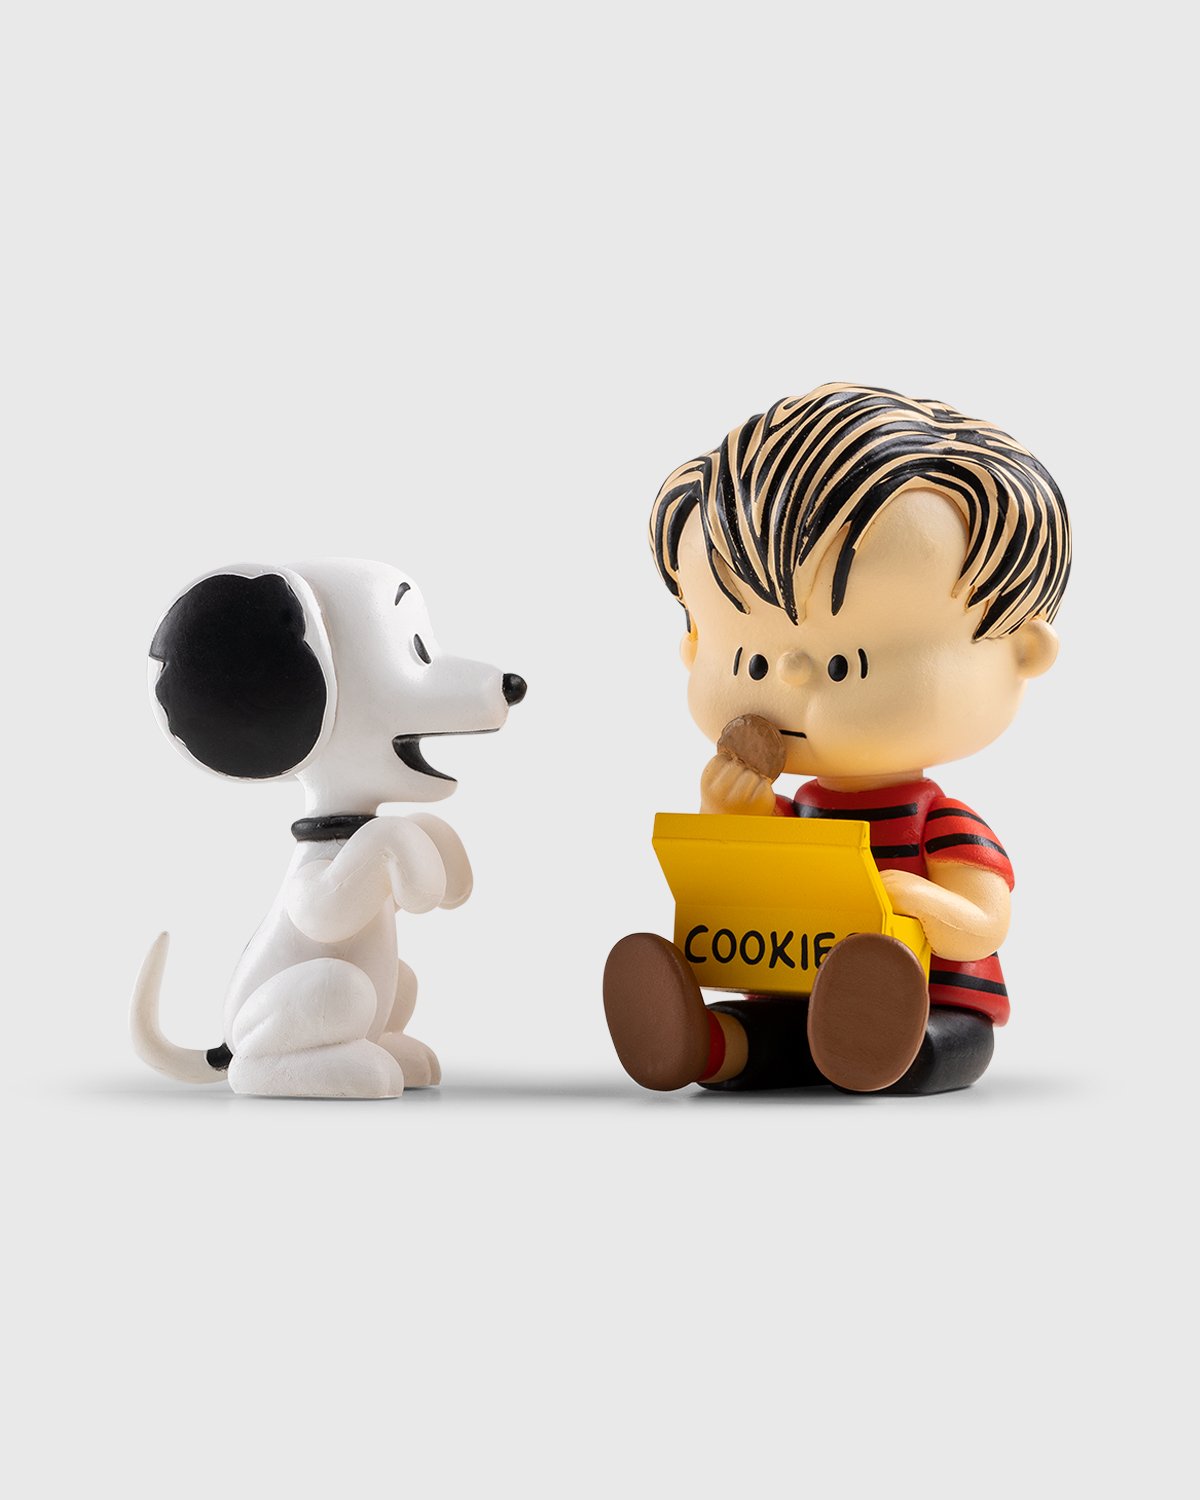 Medicom Toy Udf No.491 Peanuts Series 10 Queen`s Guard Snoopy Complete